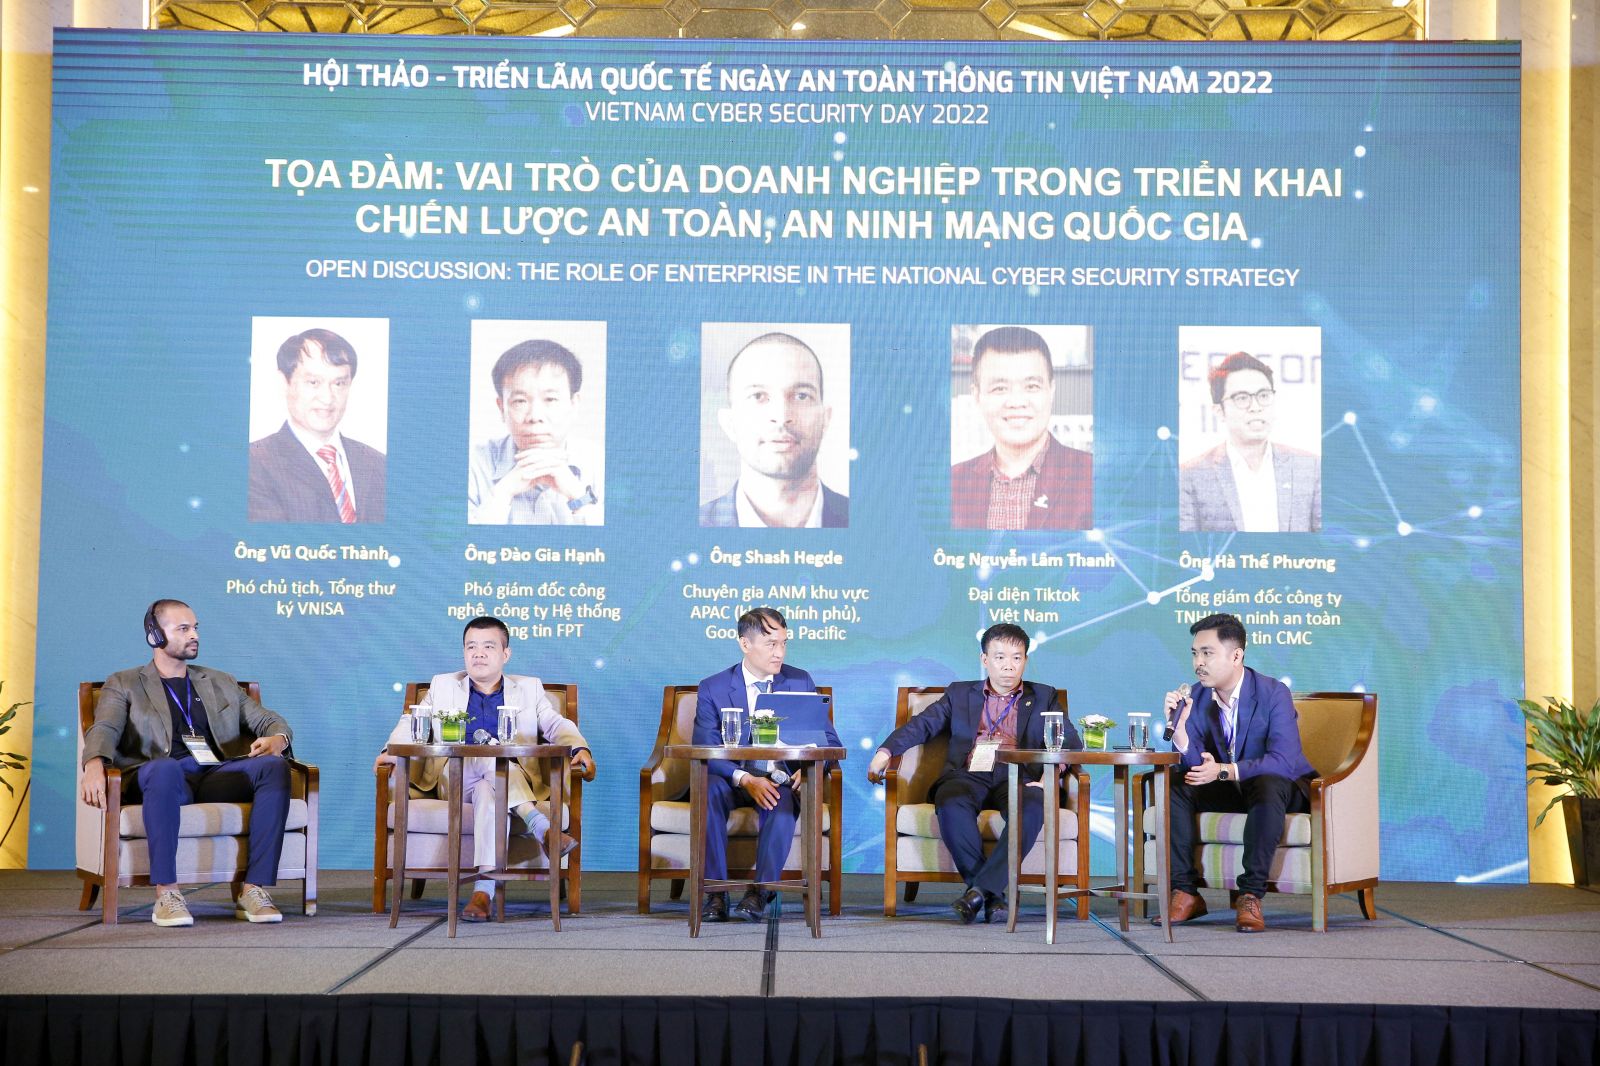 Ảnh 6: Ông Hà Thế Phương (ngoài cùng bên phải), Tổng giám đốc CMC Cyber Security chia sẻ tại Tọa đàm